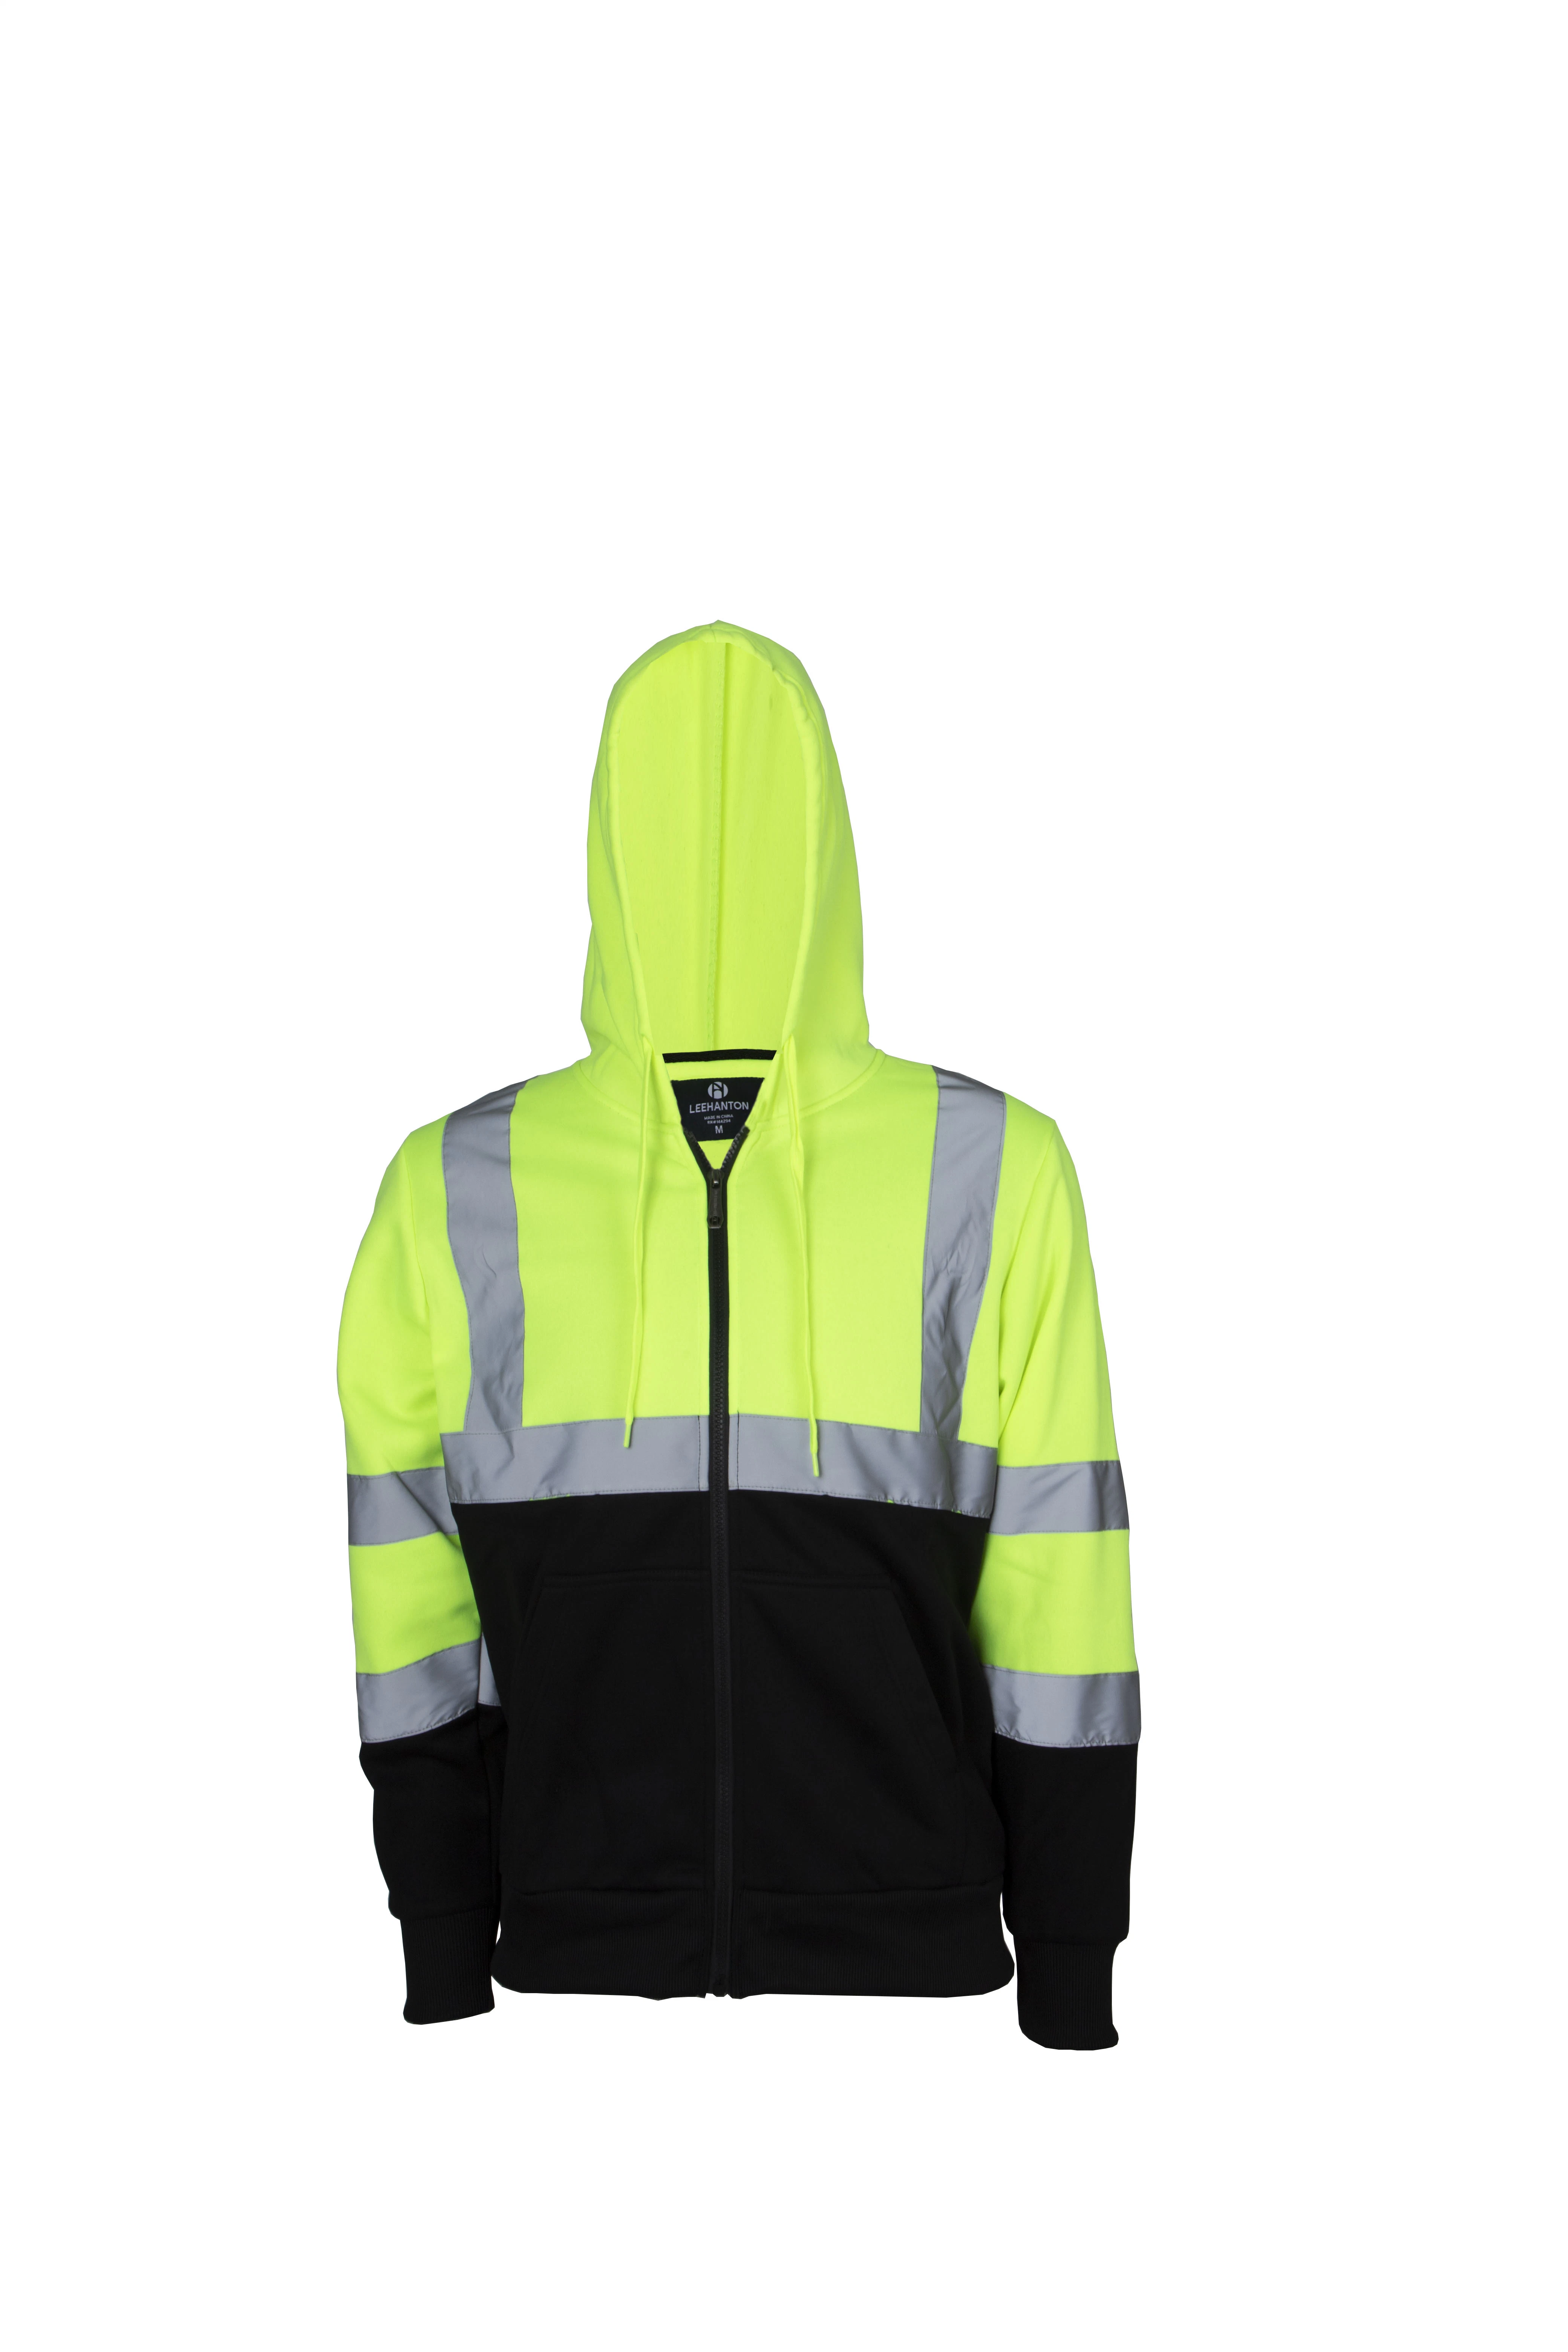 Hombres′ S ropa de trabajo camisa Reflective Safety Uniforms mangas completas Hombre Sudaderas con capucha